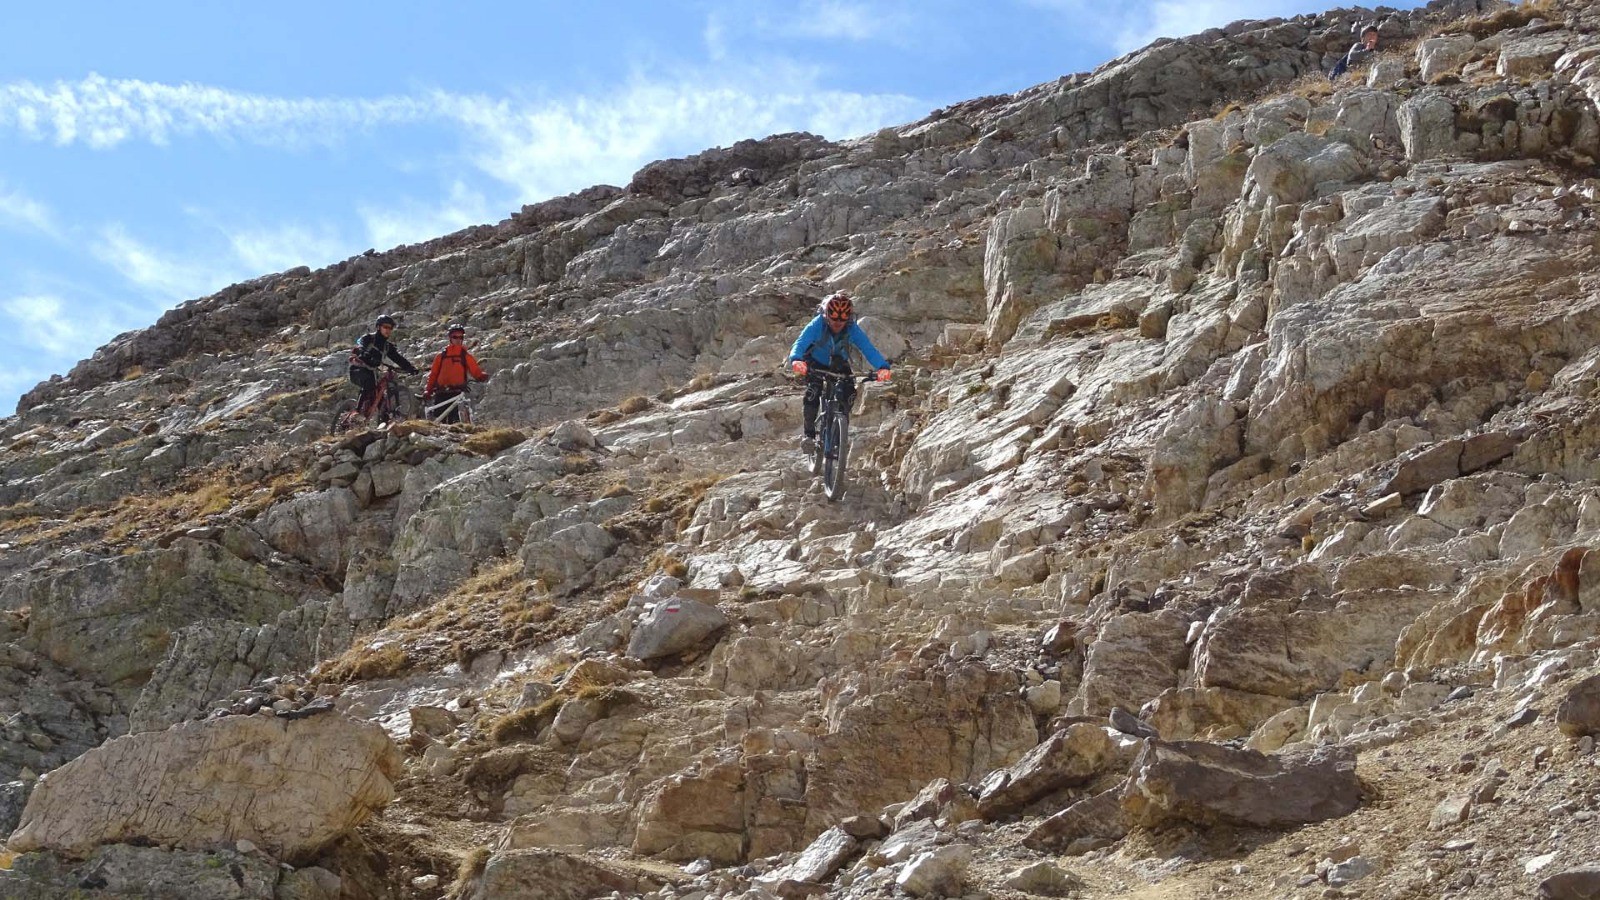 2nde difficulté dans la descente du Thabor, un enchainement de marches, d'épingles et d'étroitures dans une barre de quartzite (photo Yvan).